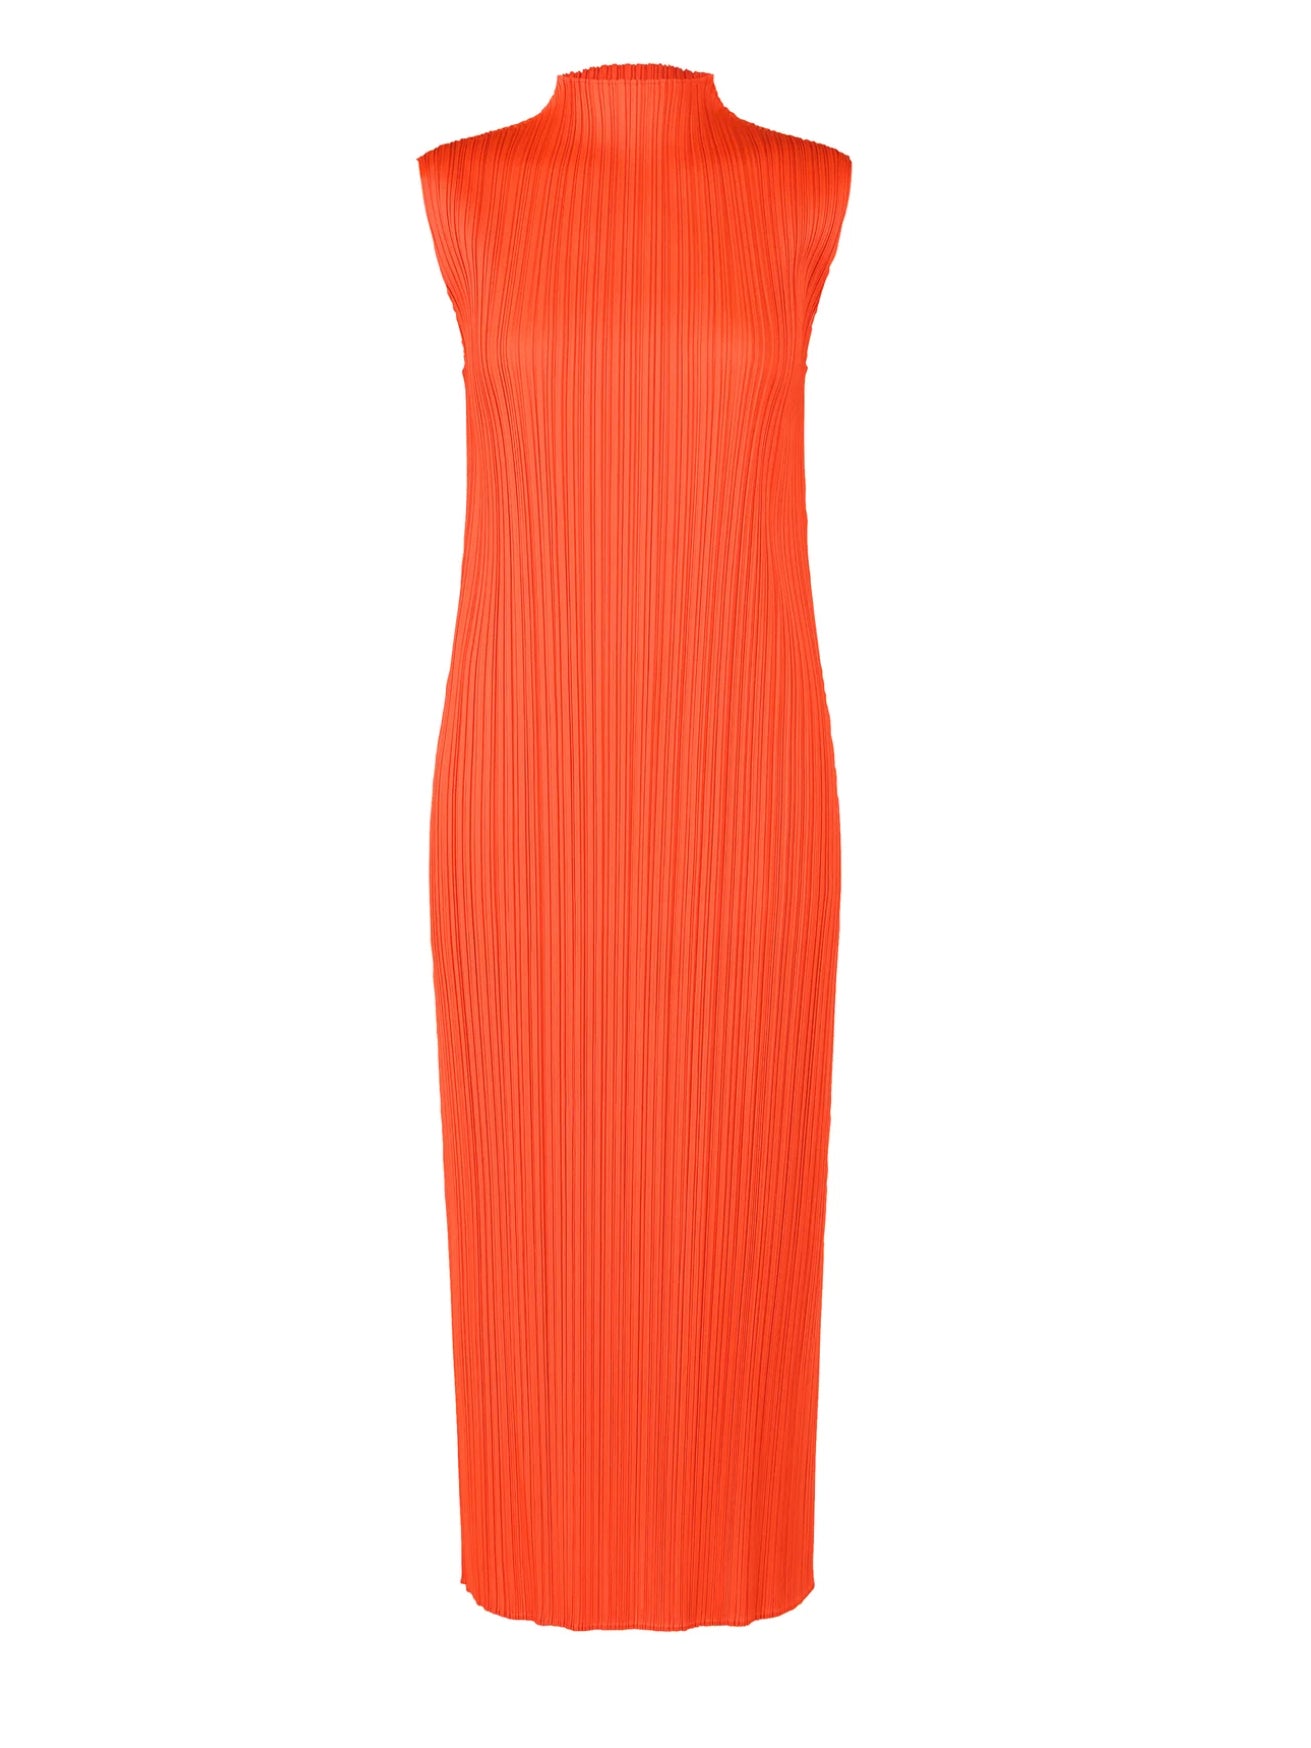 Sleeveless pleated midi dress, bright orange